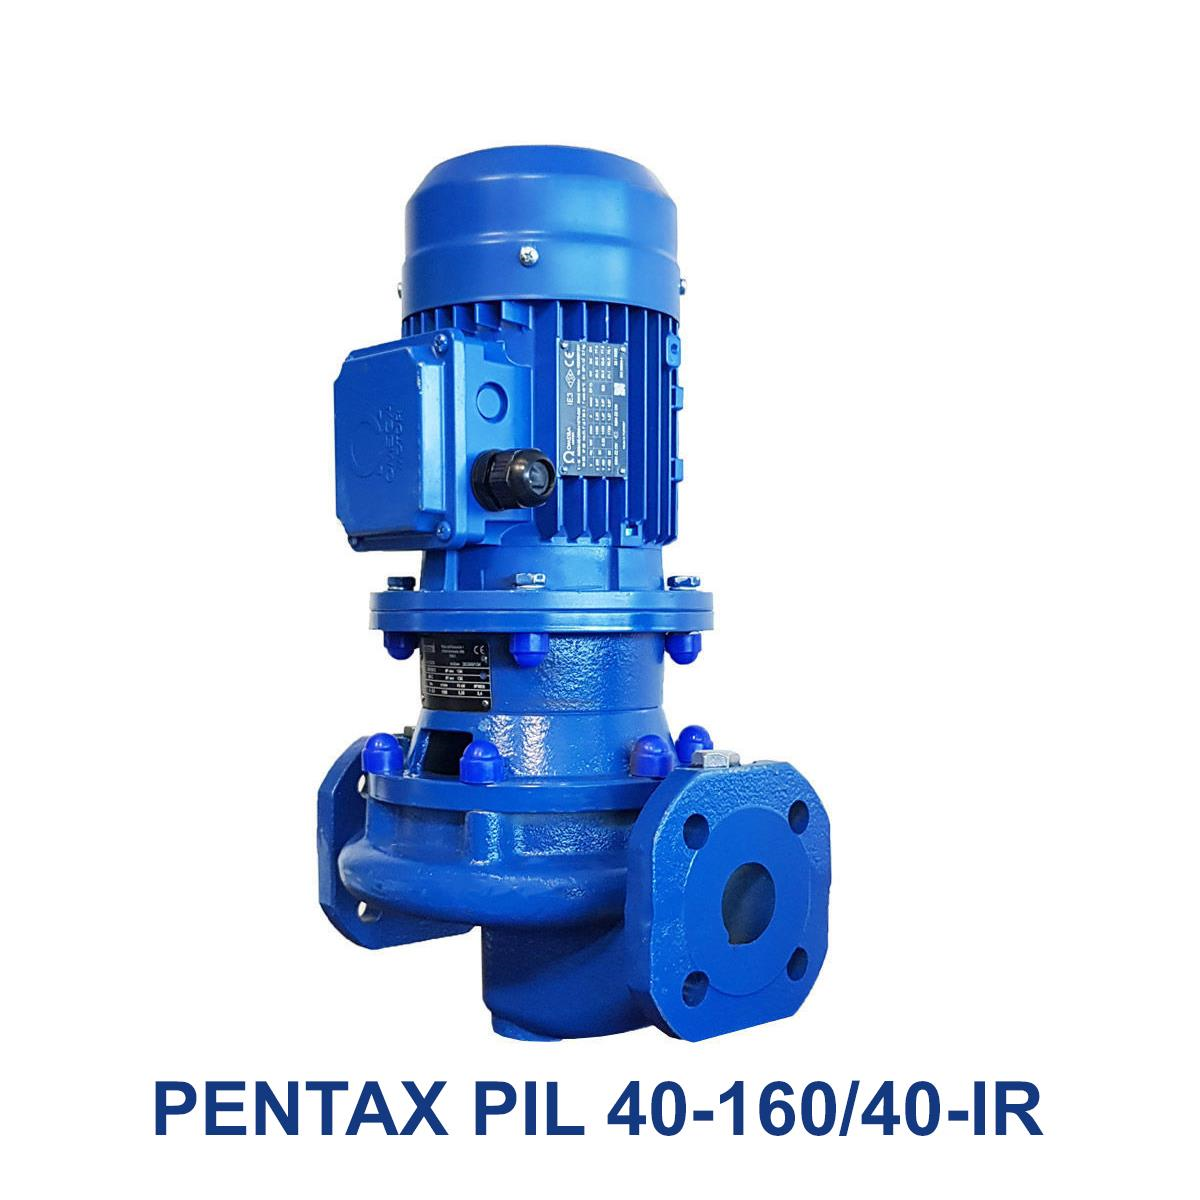 PENTAX-PIL-40-160-40-IR